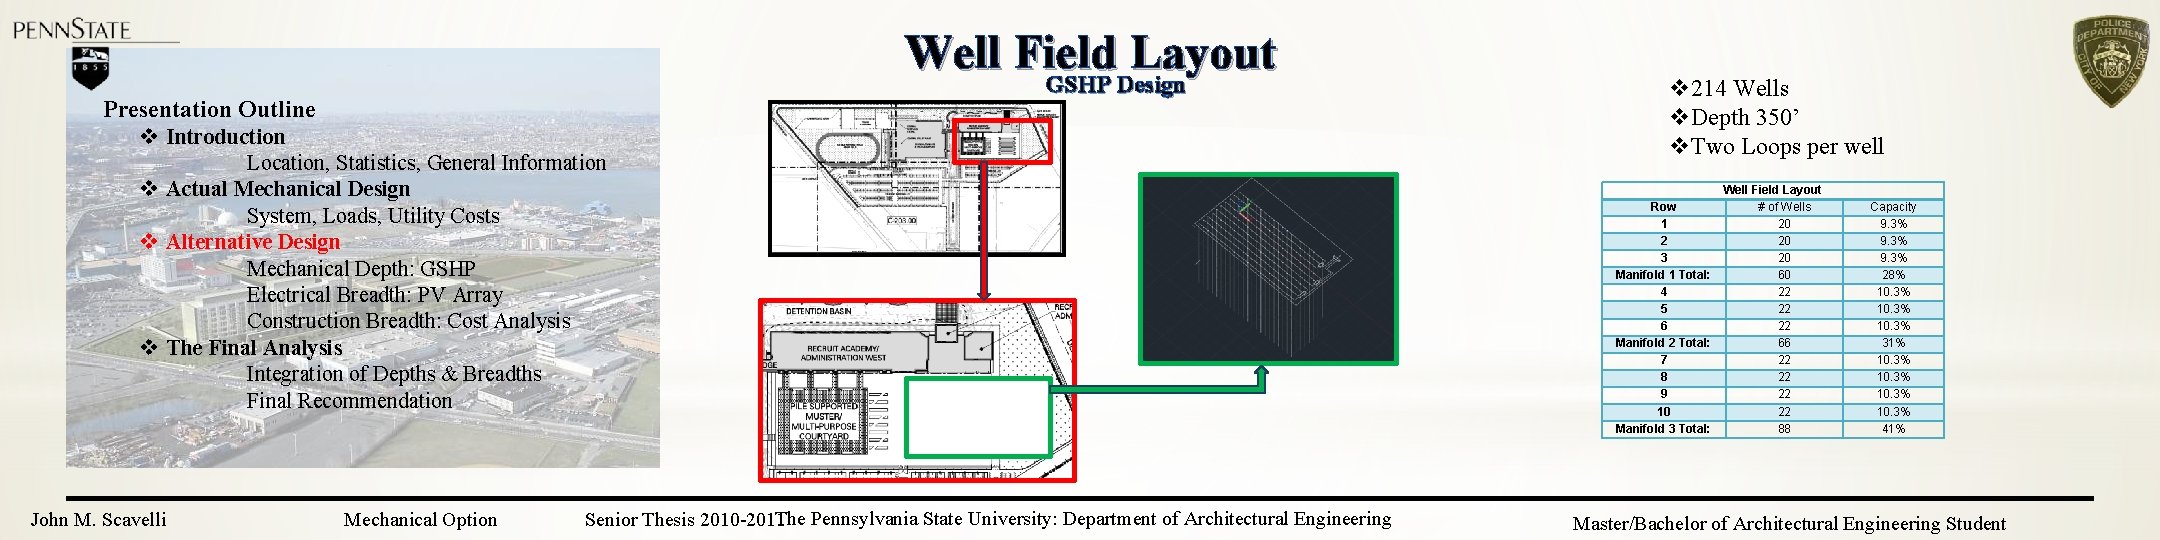 Well Field Layout GSHP Design Presentation Outline v Introduction Location, Statistics, General Information v